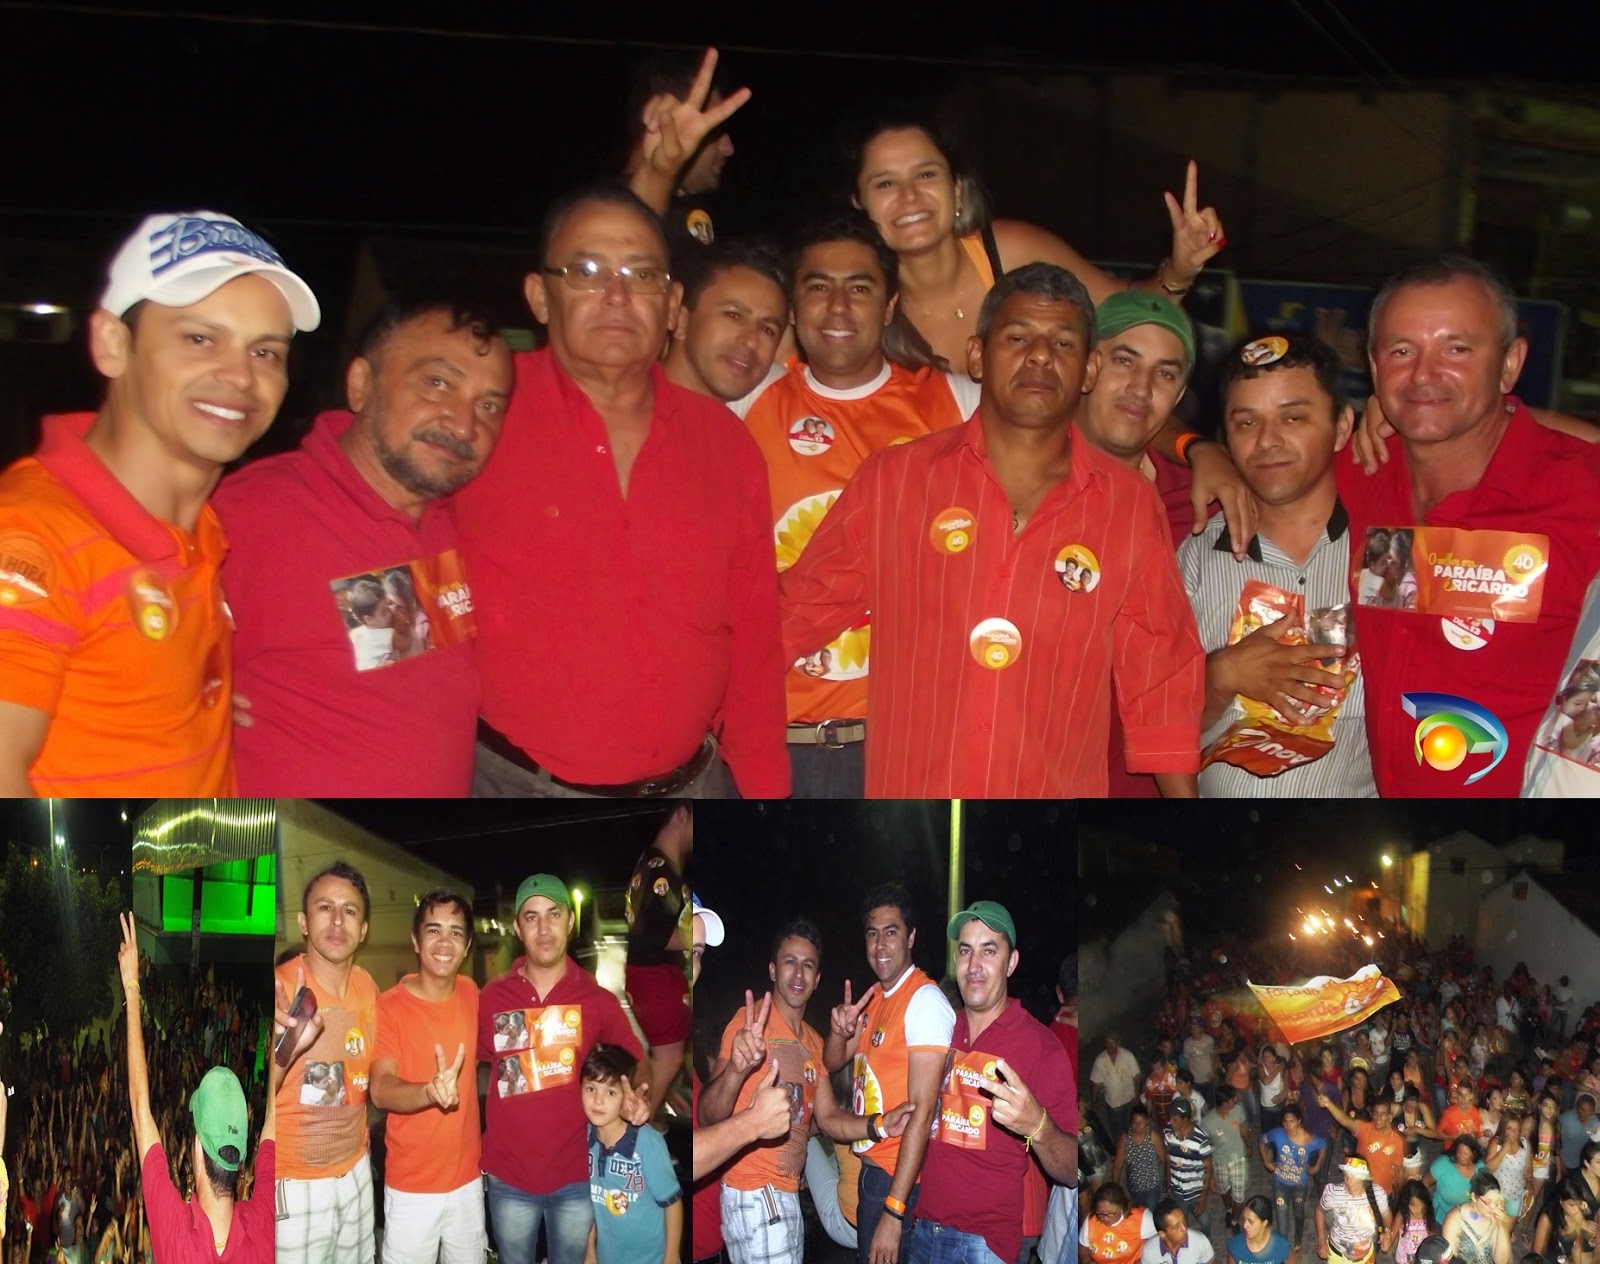 Baraunenses vão as ruas Comemorar a Vitória de "Virada" do Governador Ricardo Coutinho sobre Cássio